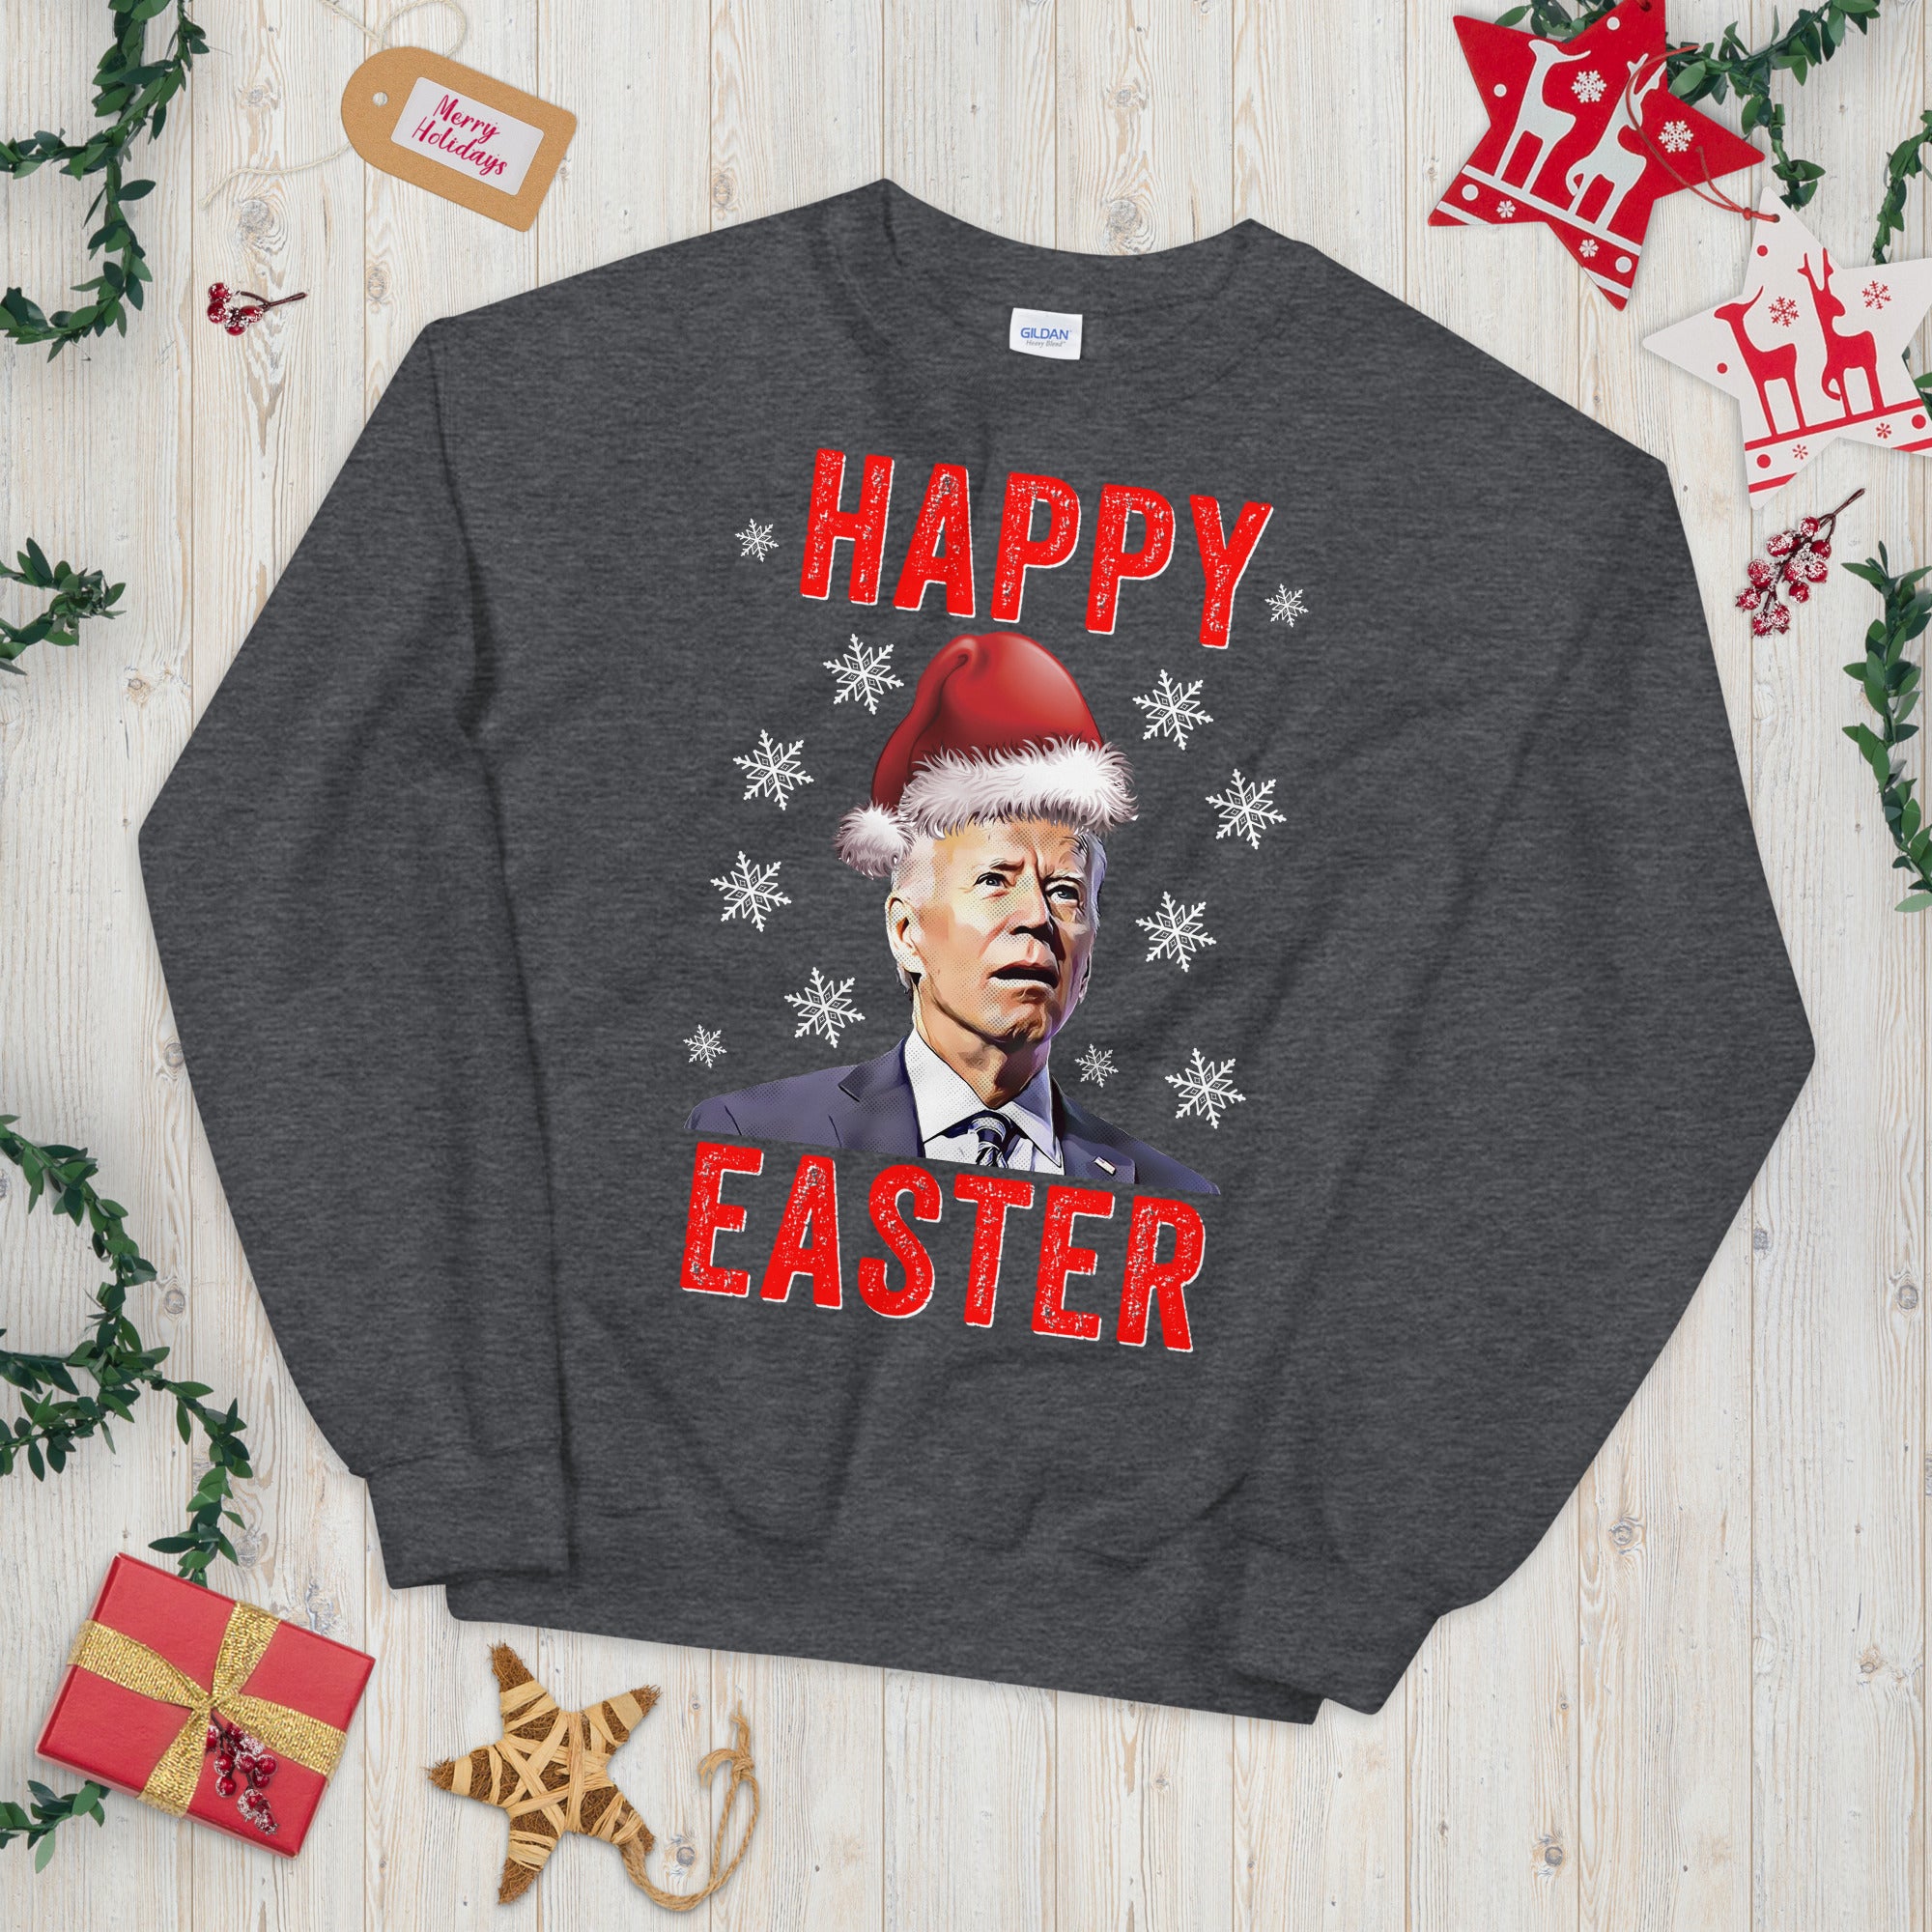 Suéter de Navidad feo, sudadera de Navidad, suéter de Navidad de Biden, suéter FJB, suéter de Navidad de Pascua feliz confuso, regalo de Navidad republicano